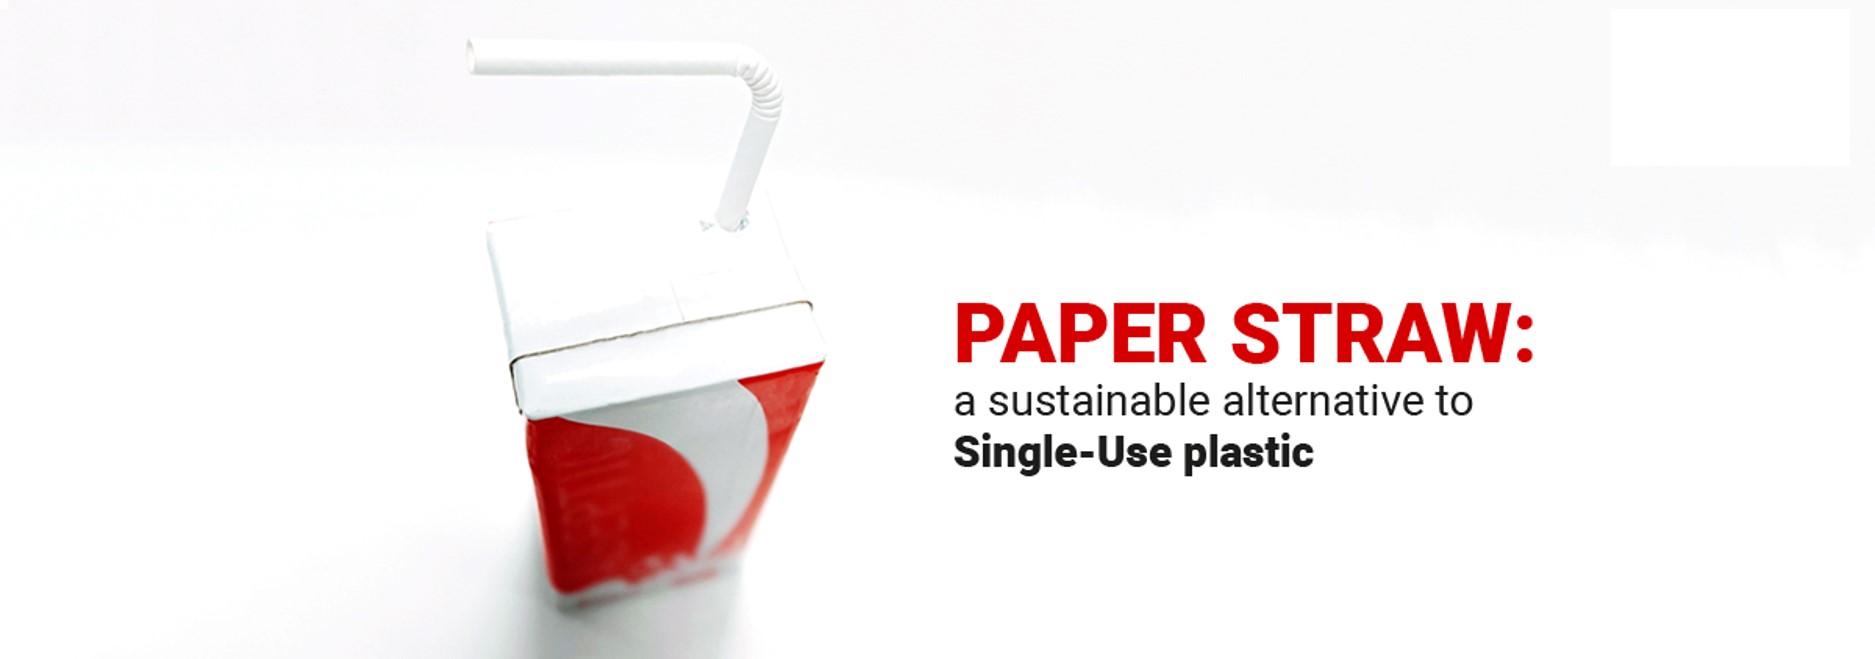 Comment les pailles en papier contribuent à réduire les plastiques à usage unique et les déchets plastiques. Présentation des pailles en papier de l’IPI